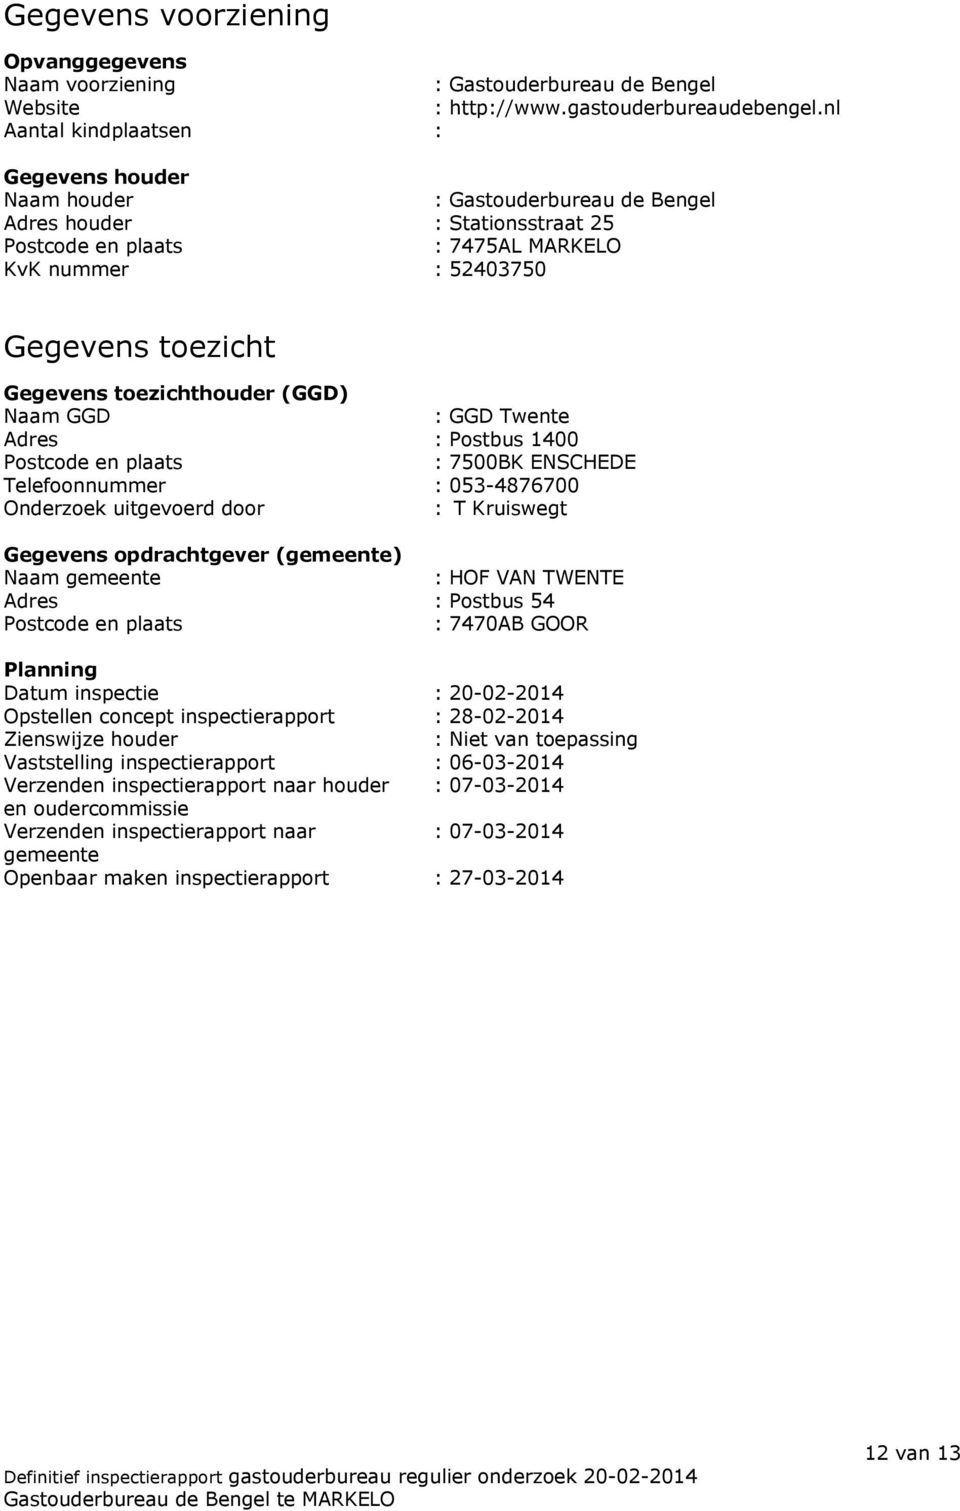 toezichthouder (GGD) Naam GGD : GGD Twente Adres : Postbus 1400 Postcode en plaats : 7500BK ENSCHEDE Telefoonnummer : 053-4876700 Onderzoek uitgevoerd door : T Kruiswegt Gegevens opdrachtgever